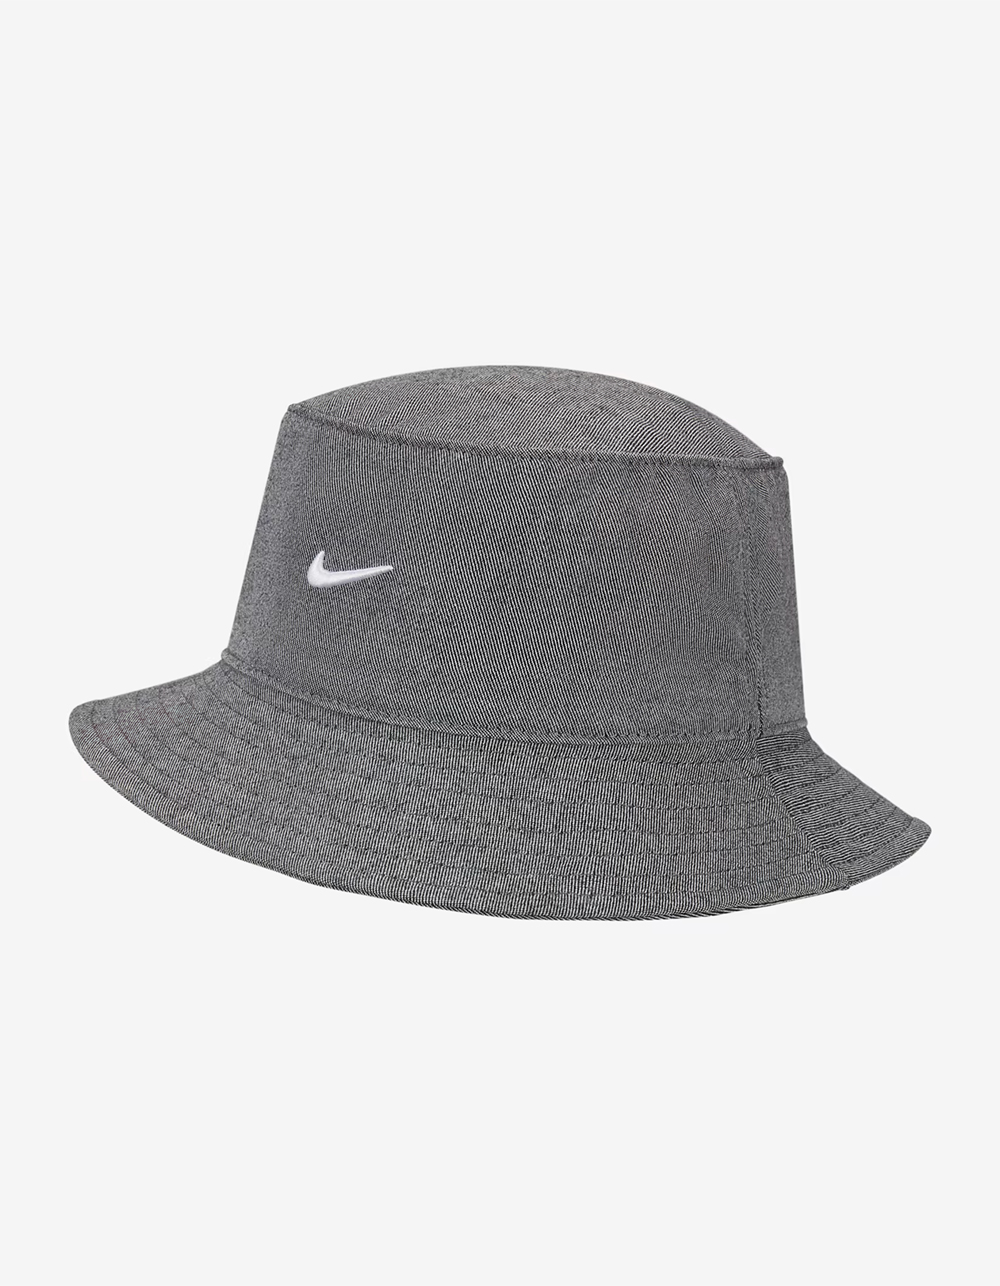 NIKE Sportswear Bucket Hat - BLK/WHT | Tillys